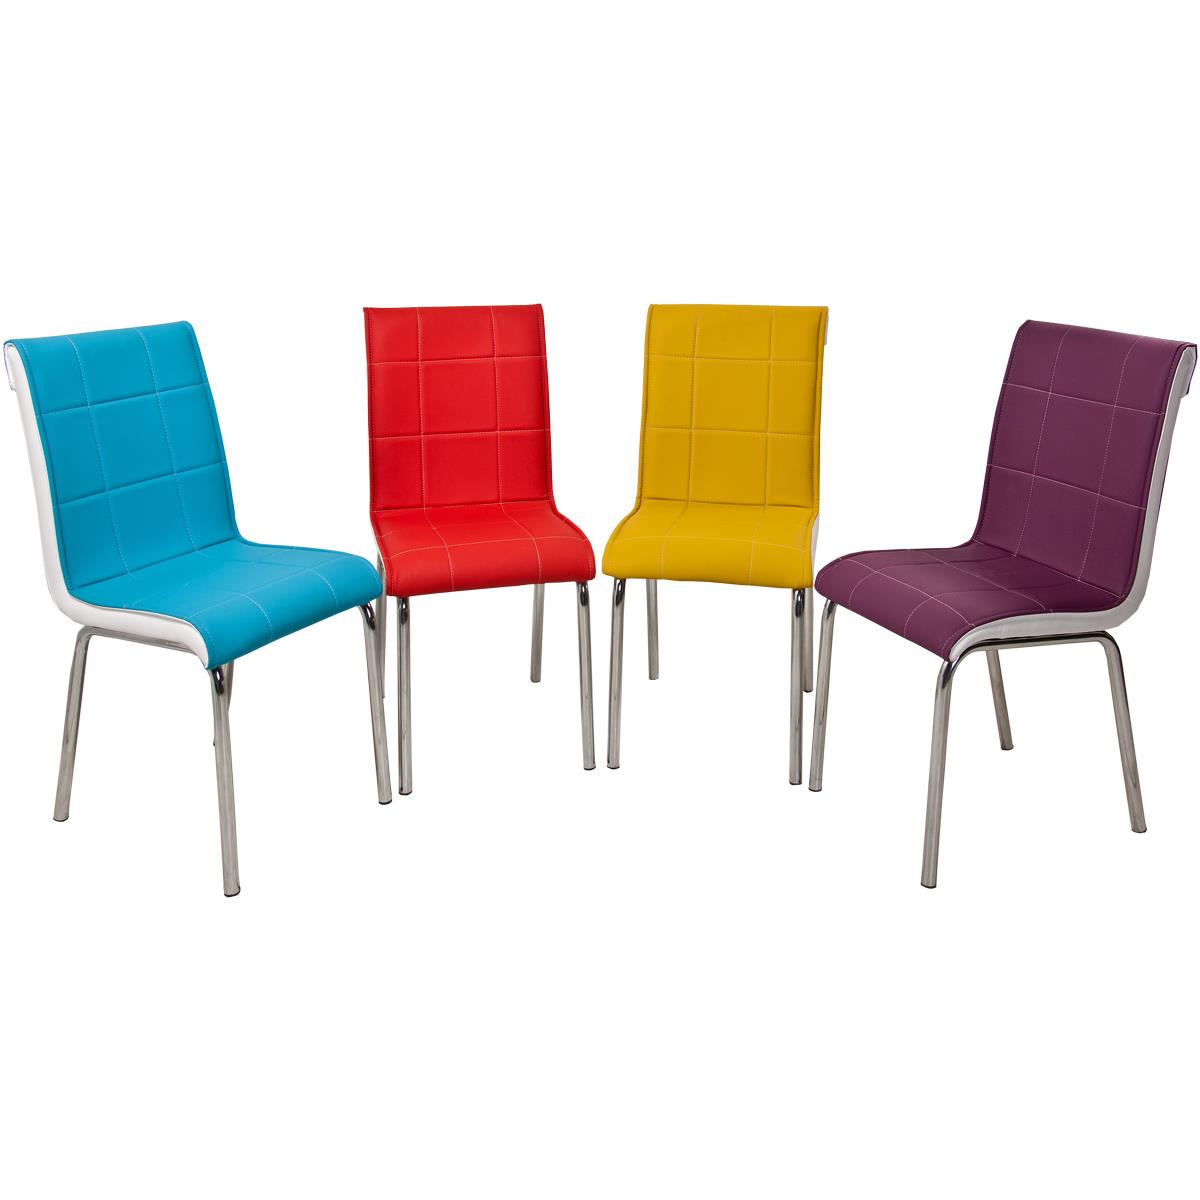 Monopetli Dört Renk Gökkuşağı Sandalye 4'lü